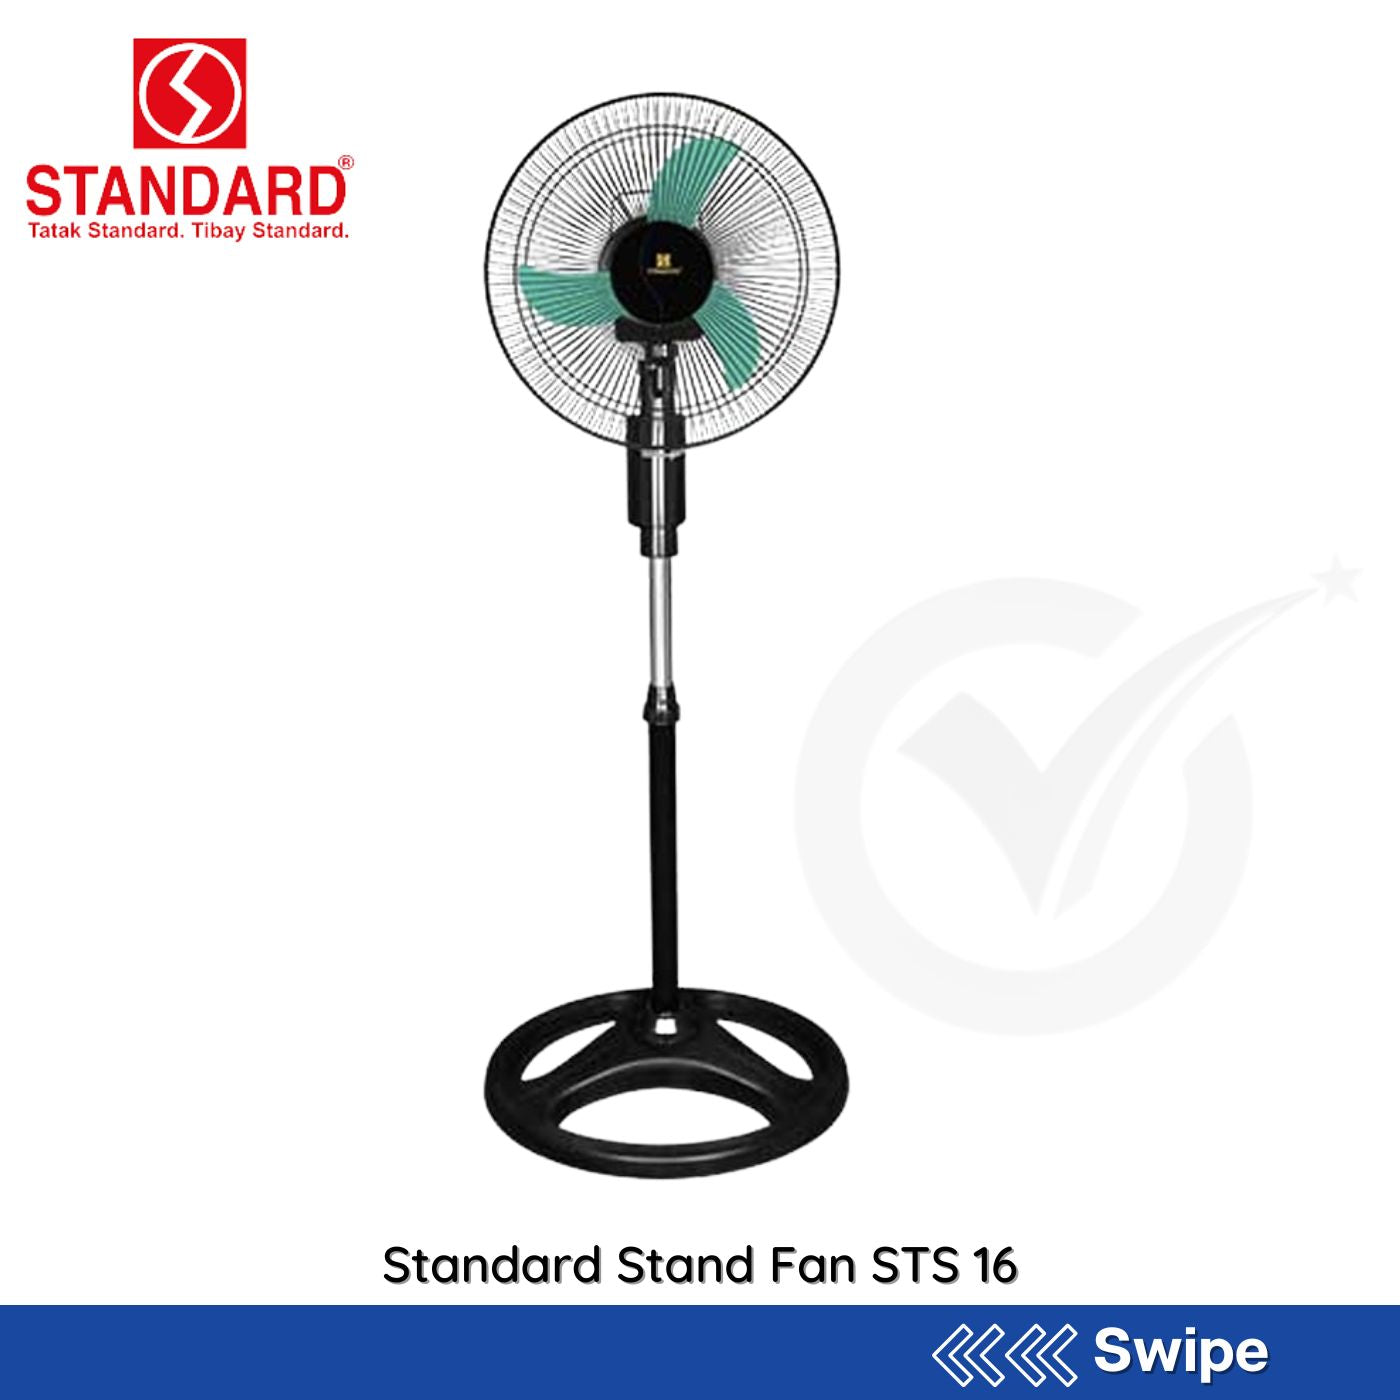 Standard Stand Fan STS 16